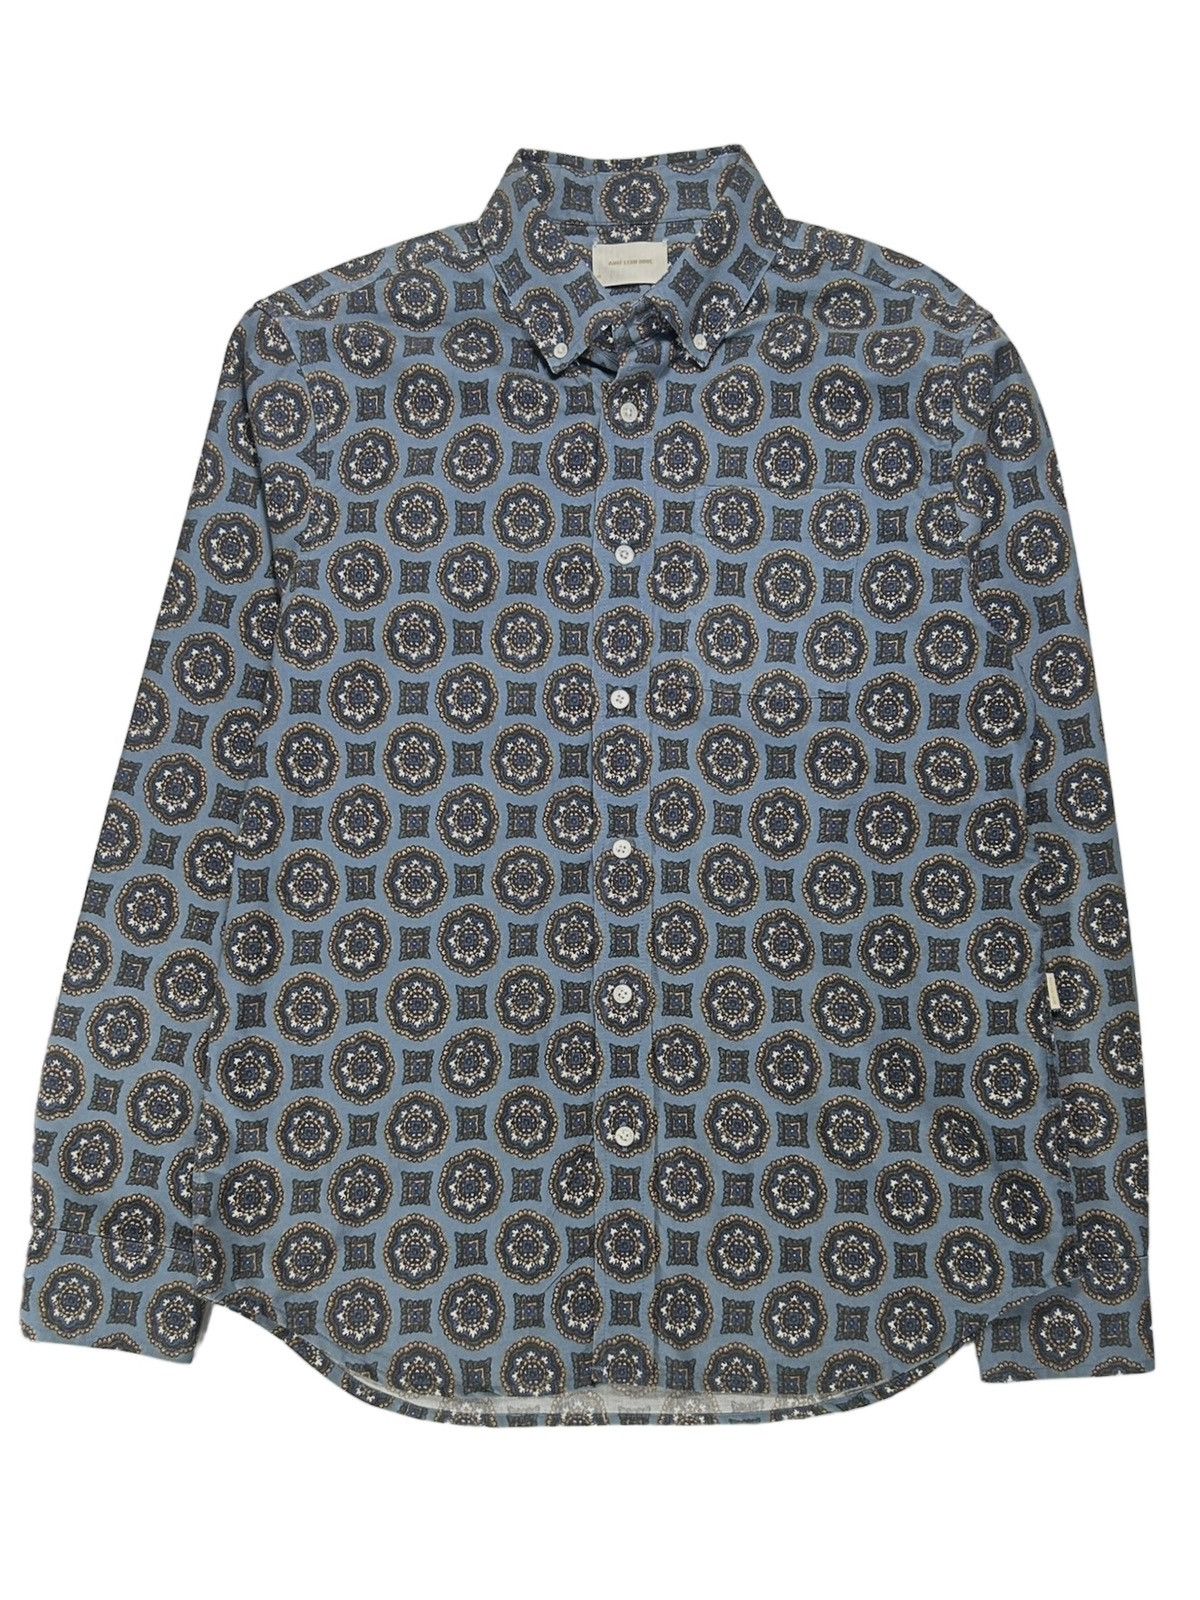 Aime Leon Dore Mosaic Print Button Down Shirt | Grailed